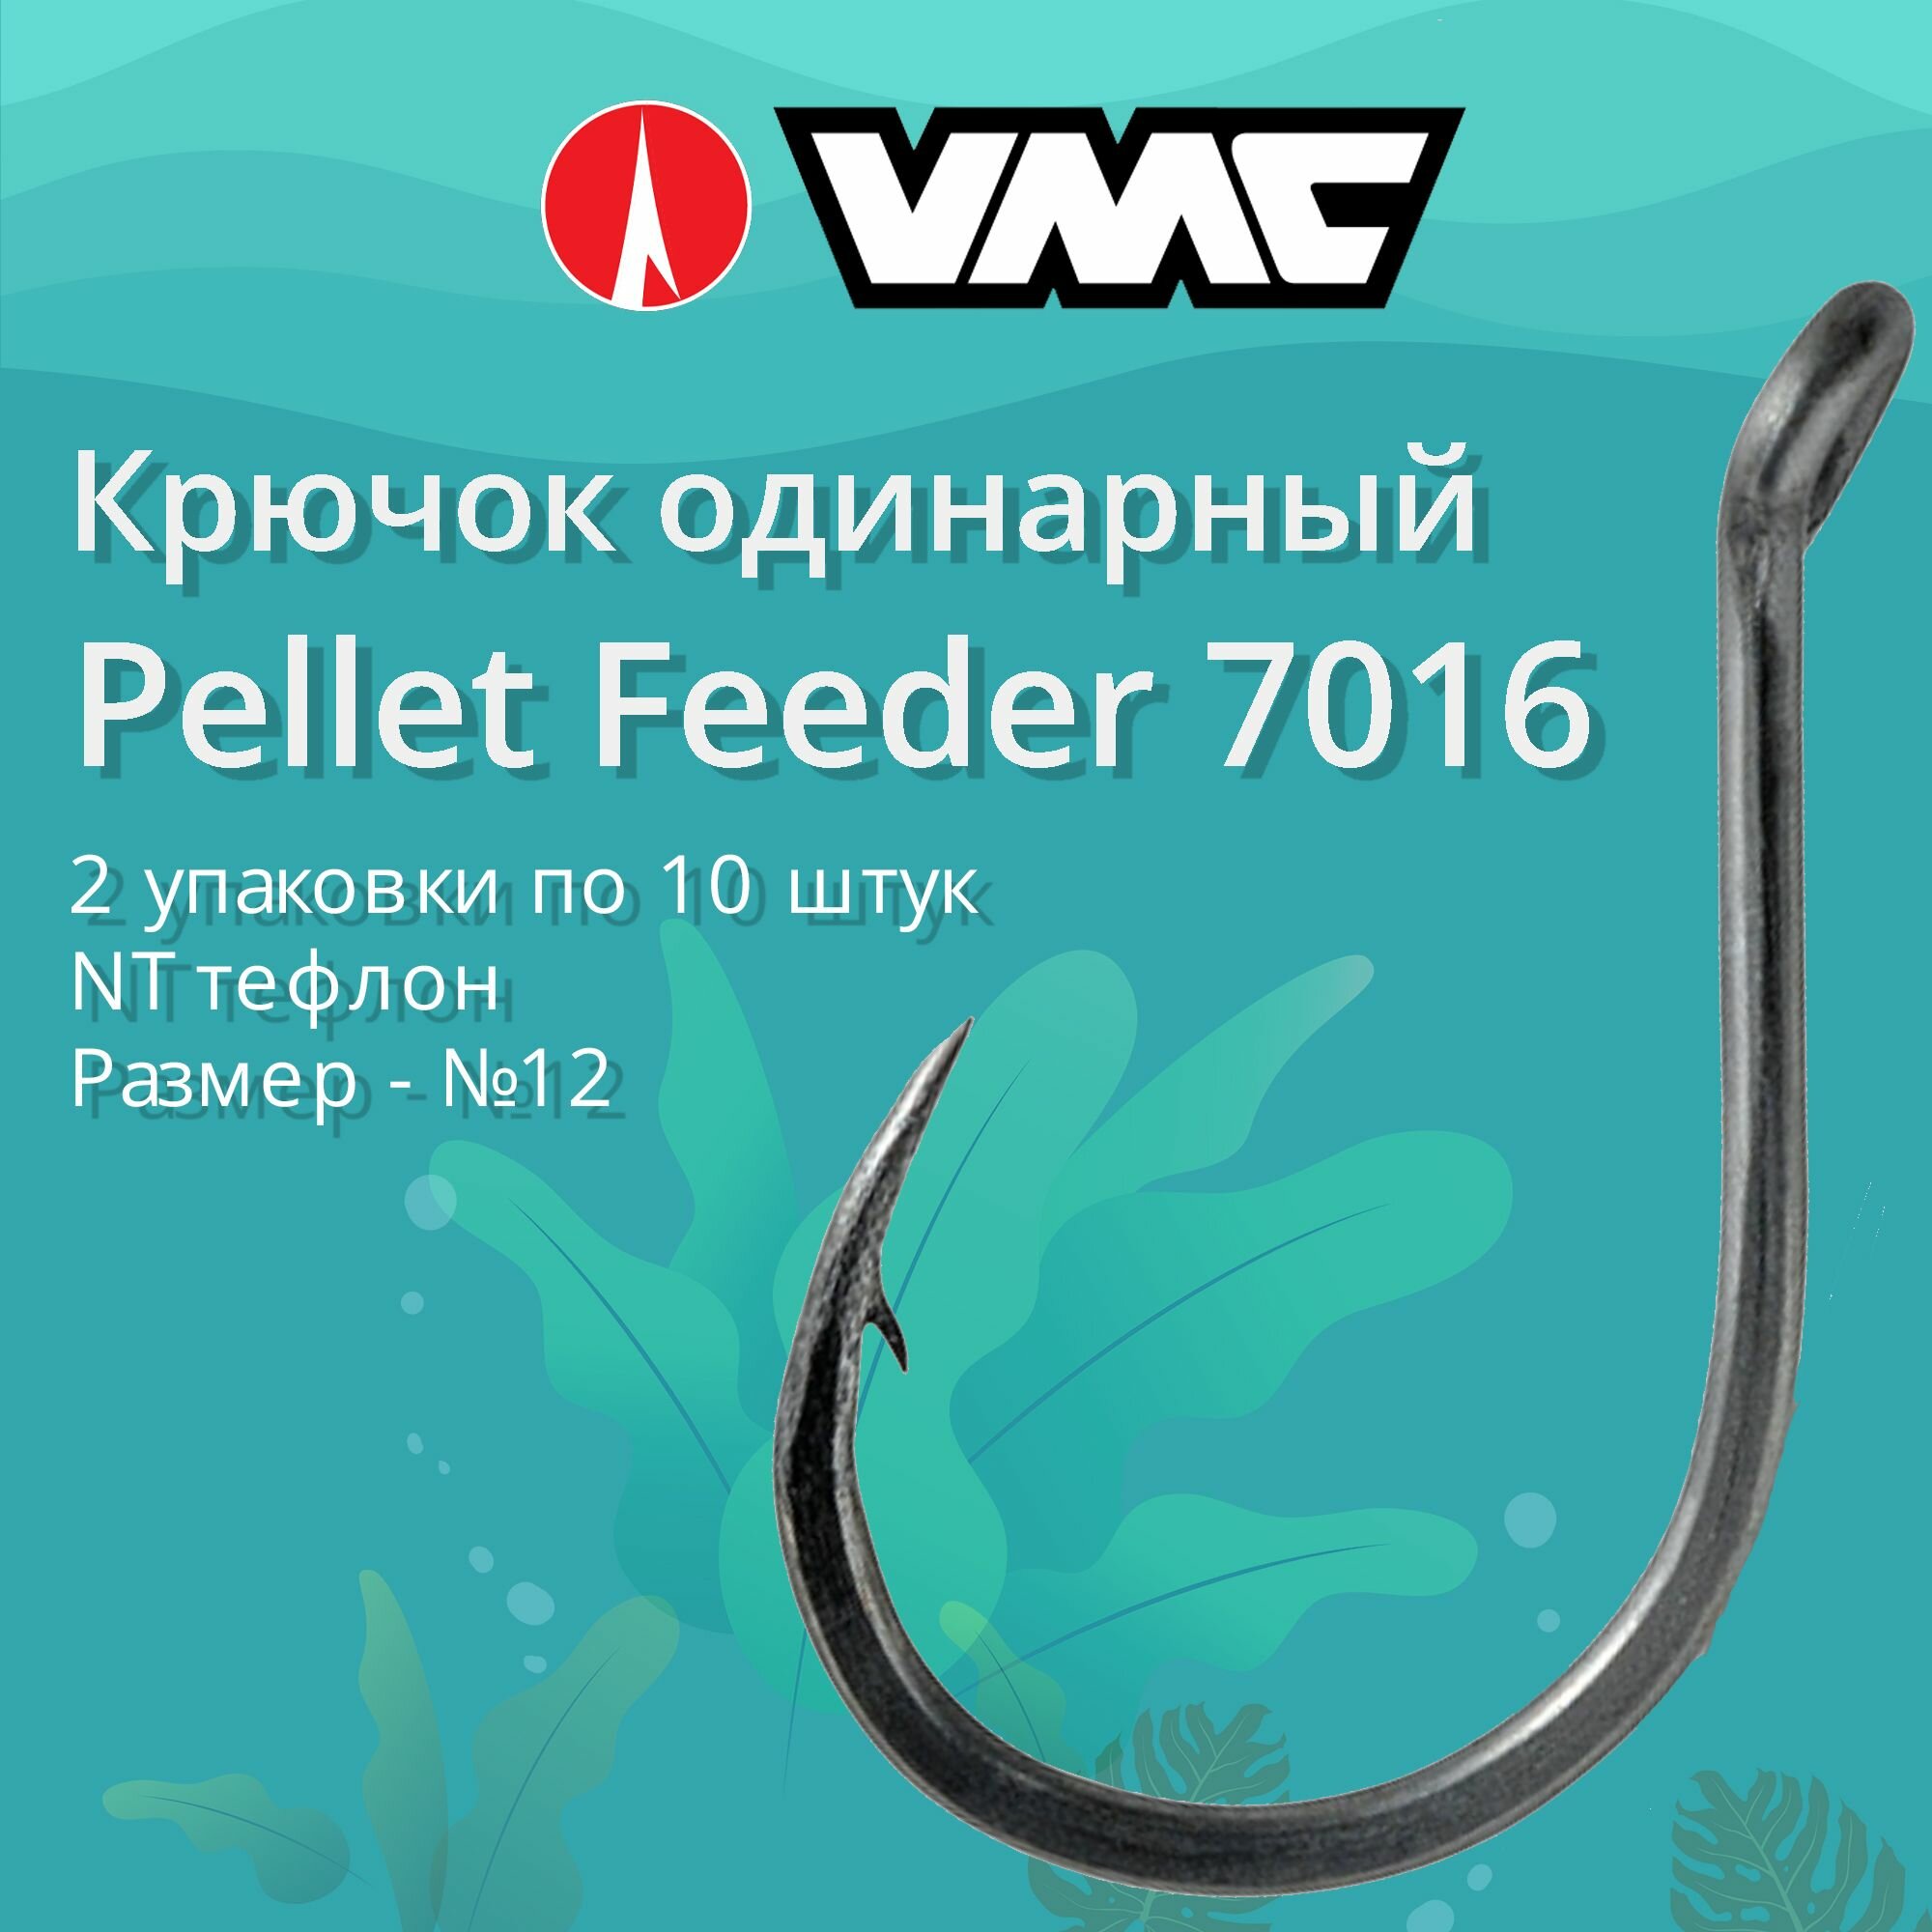 Крючки для рыбалки (одинарный) VMC Pellet Feeder 7016 NT (тефлон) №12 2 упаковки по 10 штук